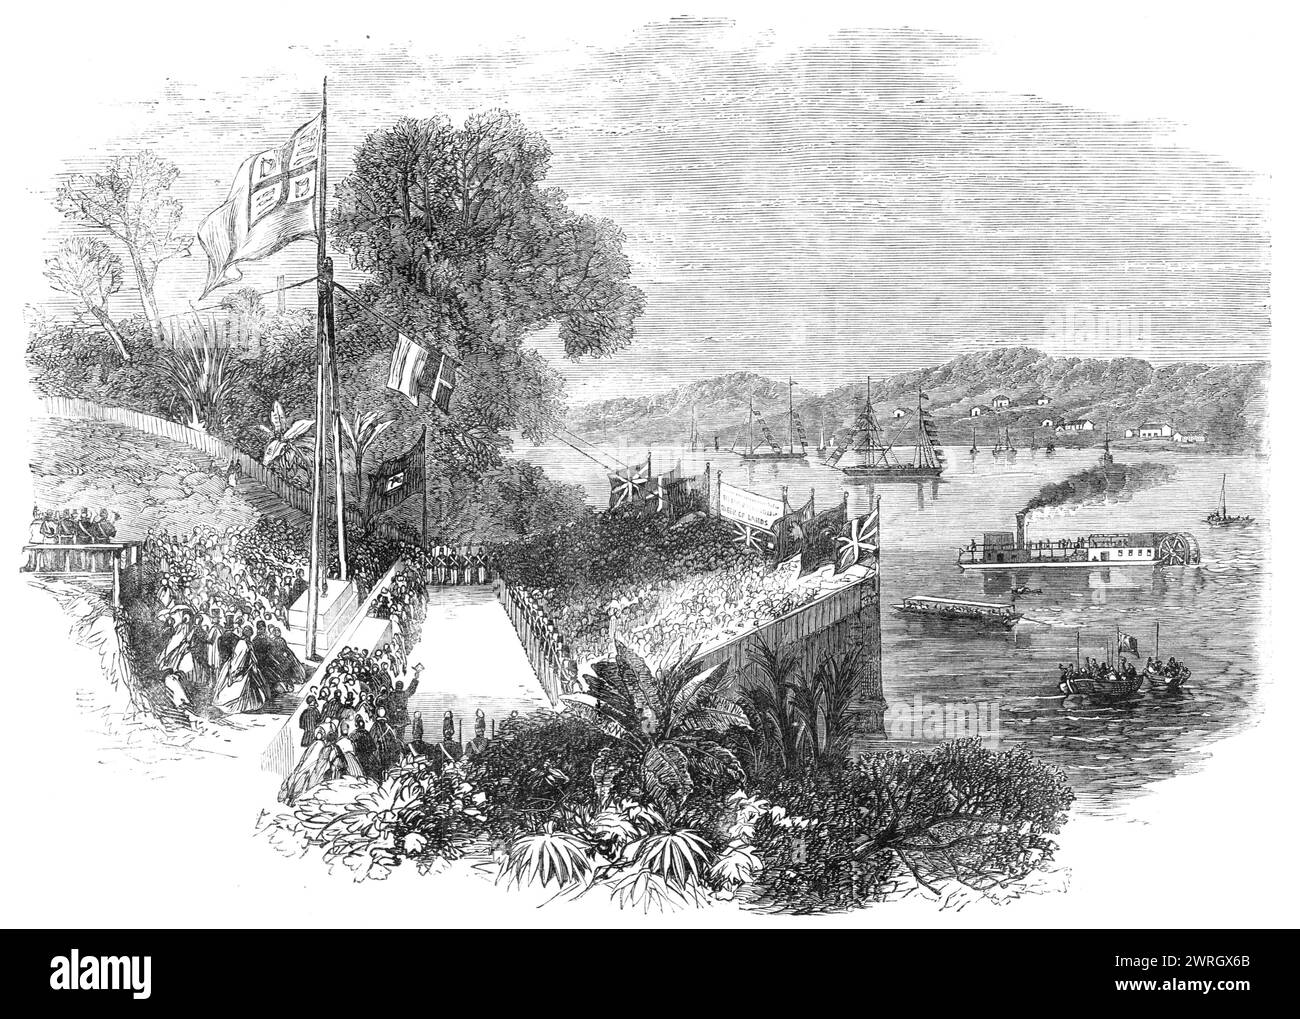 Grundsteinlegung der Brisbane Bridge, Queensland, New South Wales, 1864. "Der Grundstein für die neue Brücke, die den nördlichen und südlichen Teil der Stadt verbindet, wurde am 22. August von Sir G. F. Bowen gelegt. Das Bauwerk begann so nach den Entwürfen der Ingenieure Robson und I'Anson. es soll eine eiserne Gitterbrücke sein... die tatsächlichen Kosten werden auf &#xa3;50.000 bis &#xa3;60.000, die von der Corporation of the City of Brisbane getragen werden. Die Zeremonie des ersten Steins wurde von etwa 1500 Personen beobachtet, die in das Ink Stockfoto